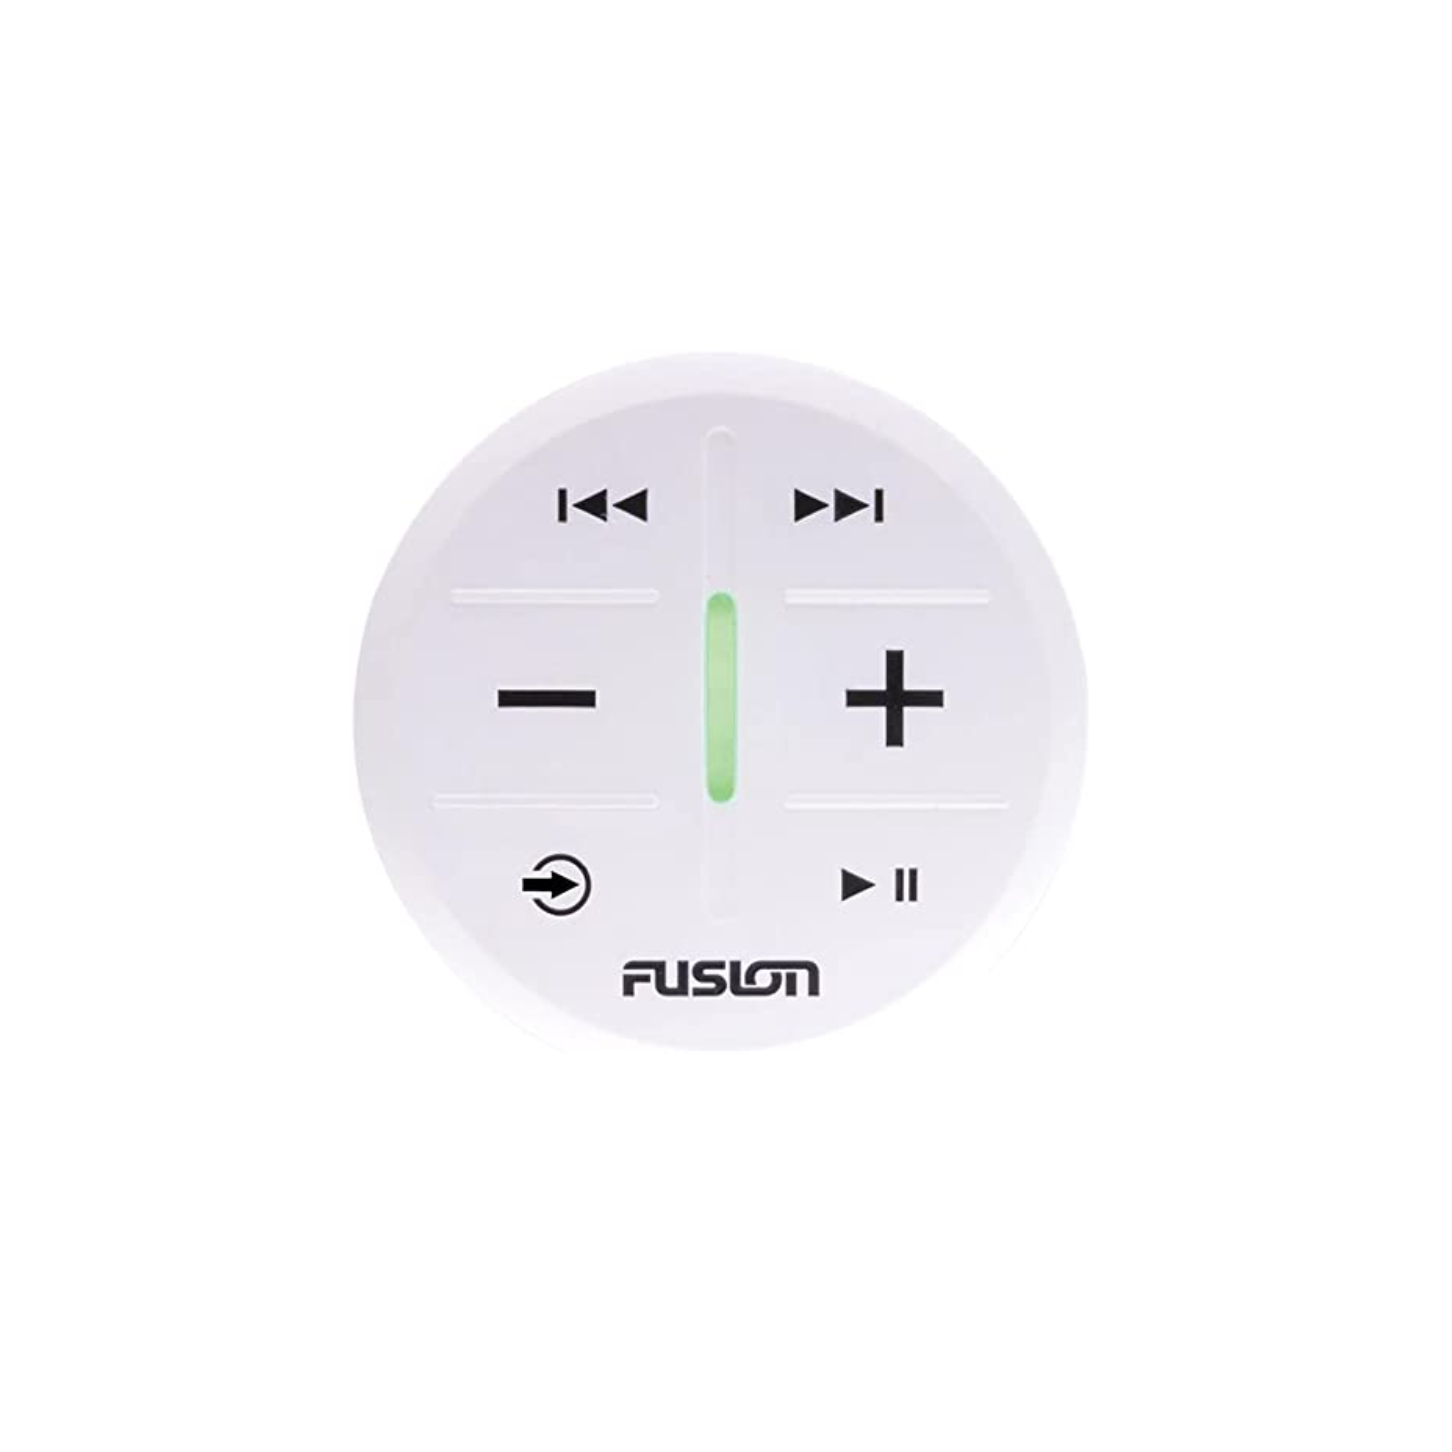 Fusion ARX70B, ARX Wireless Remote Control